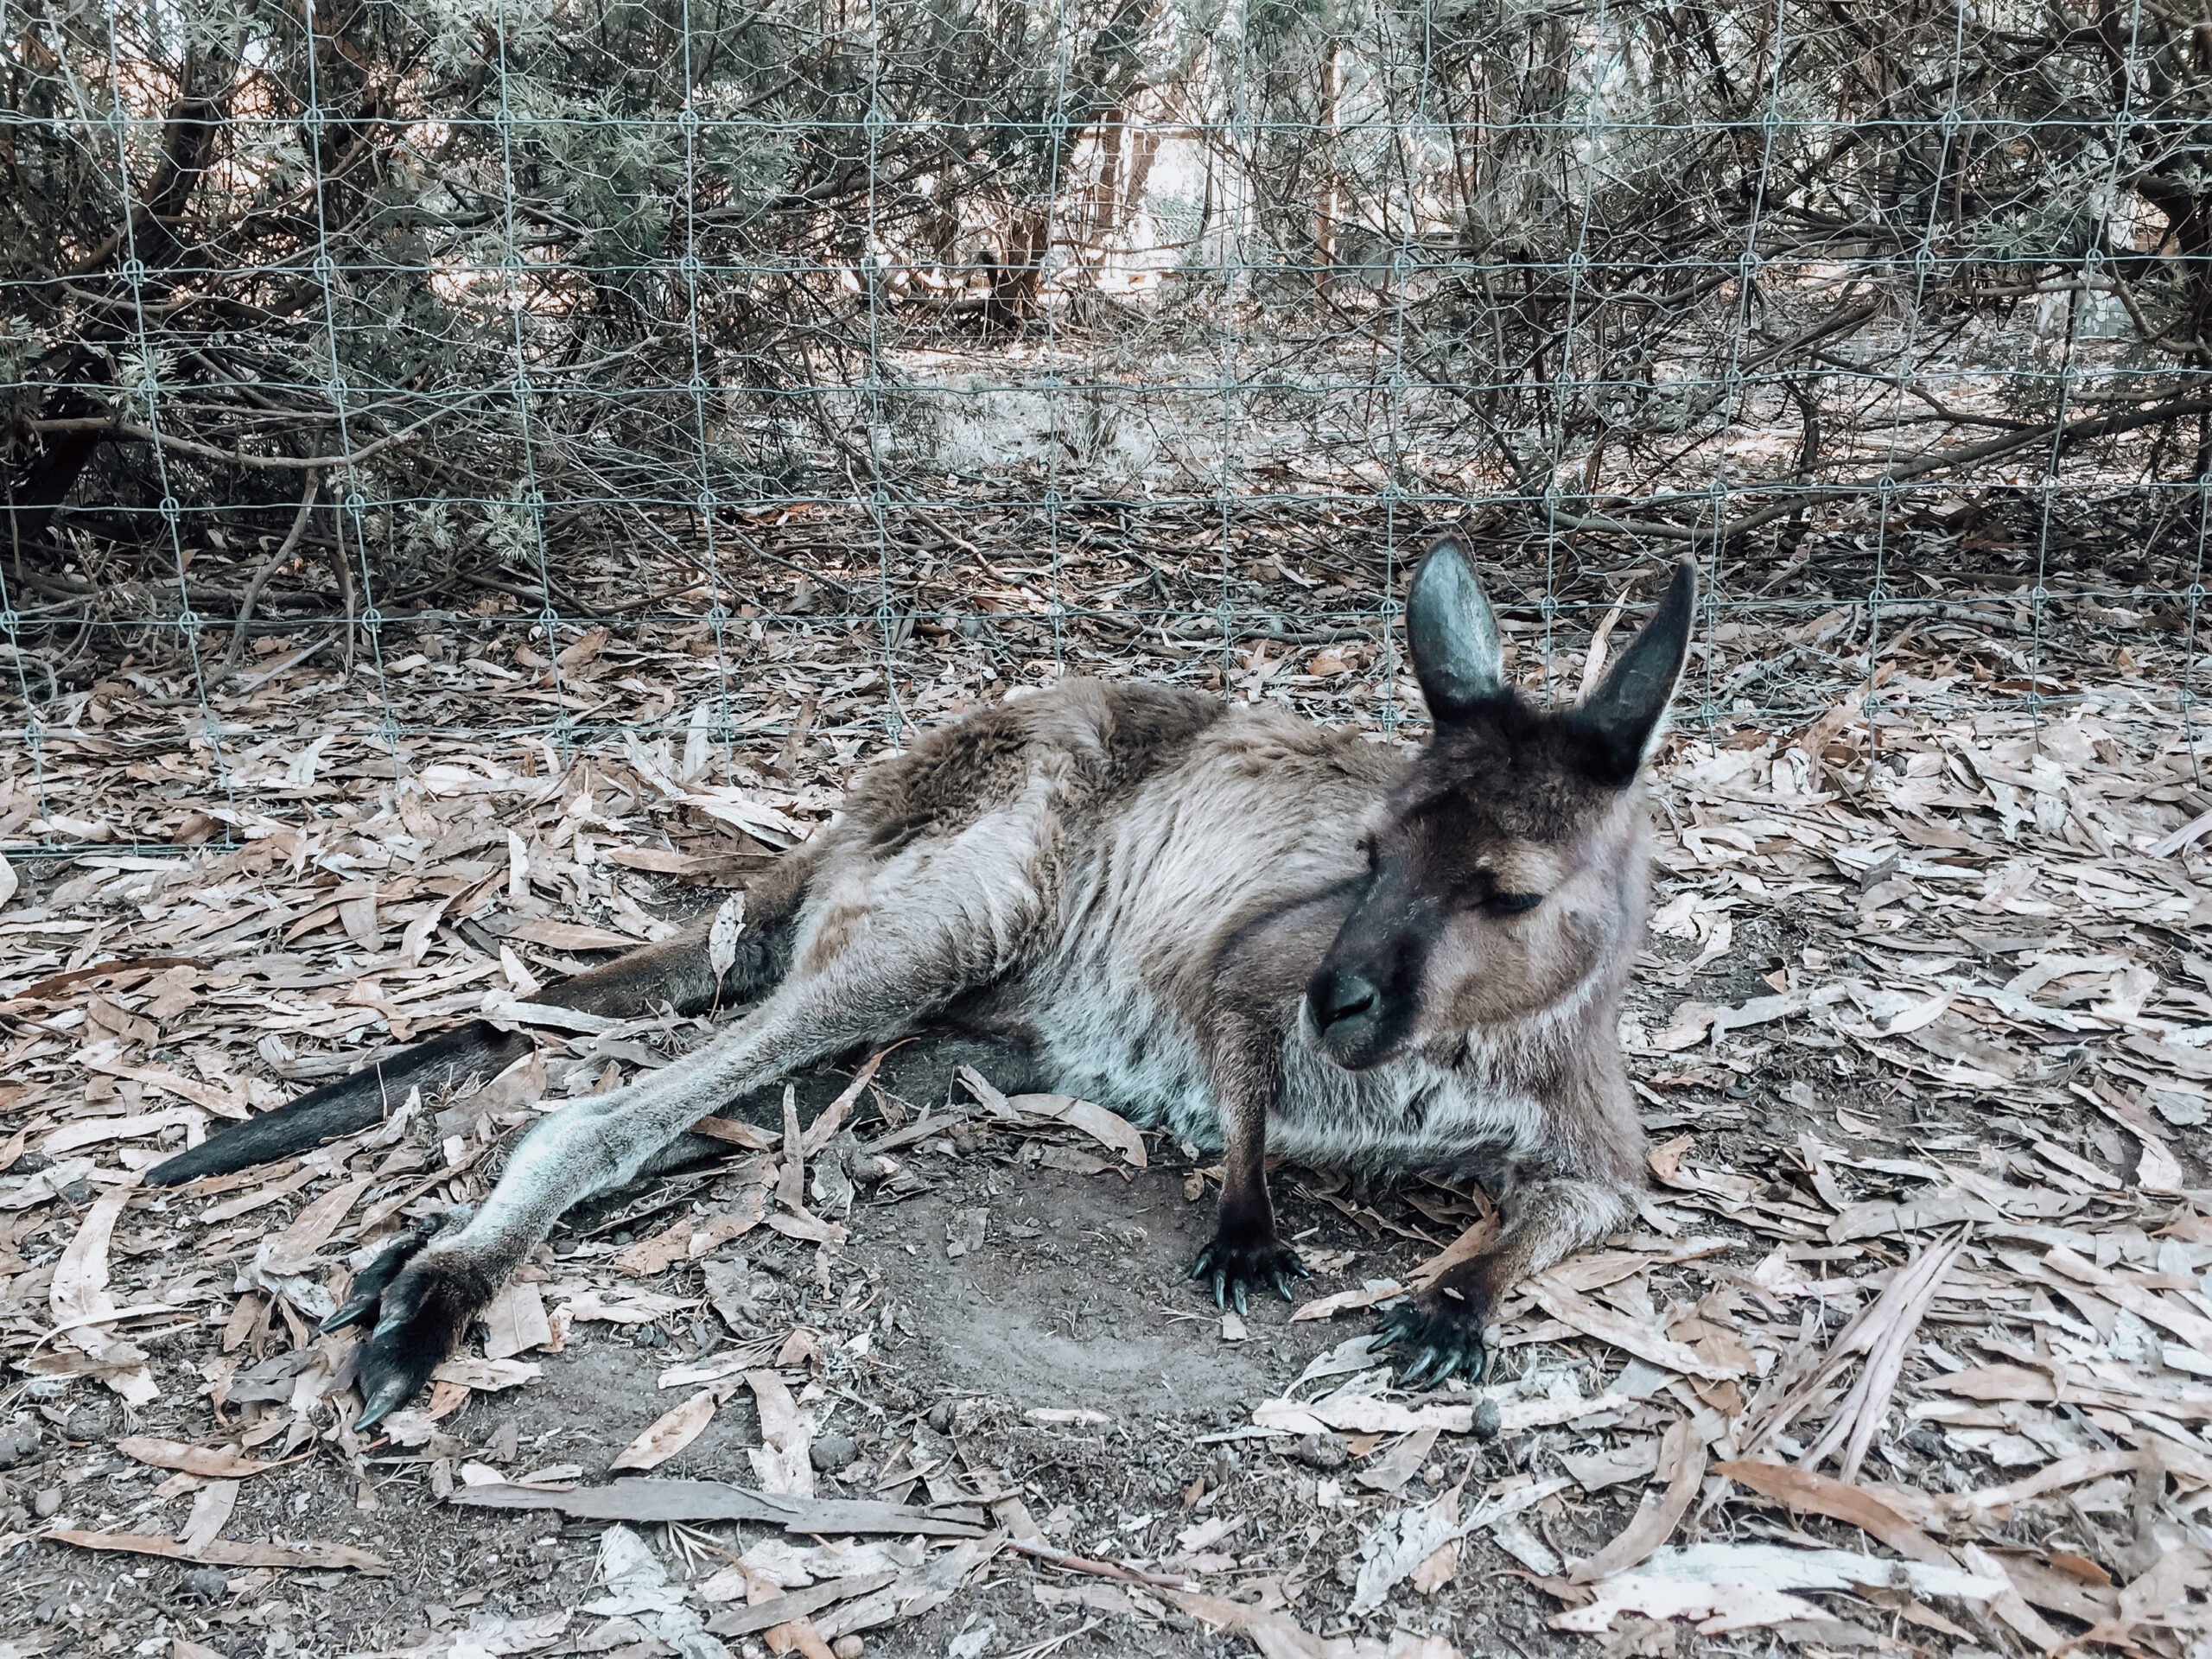 Exploring australia’s wildlife on Kangaroo Island – Australia Travel Diary